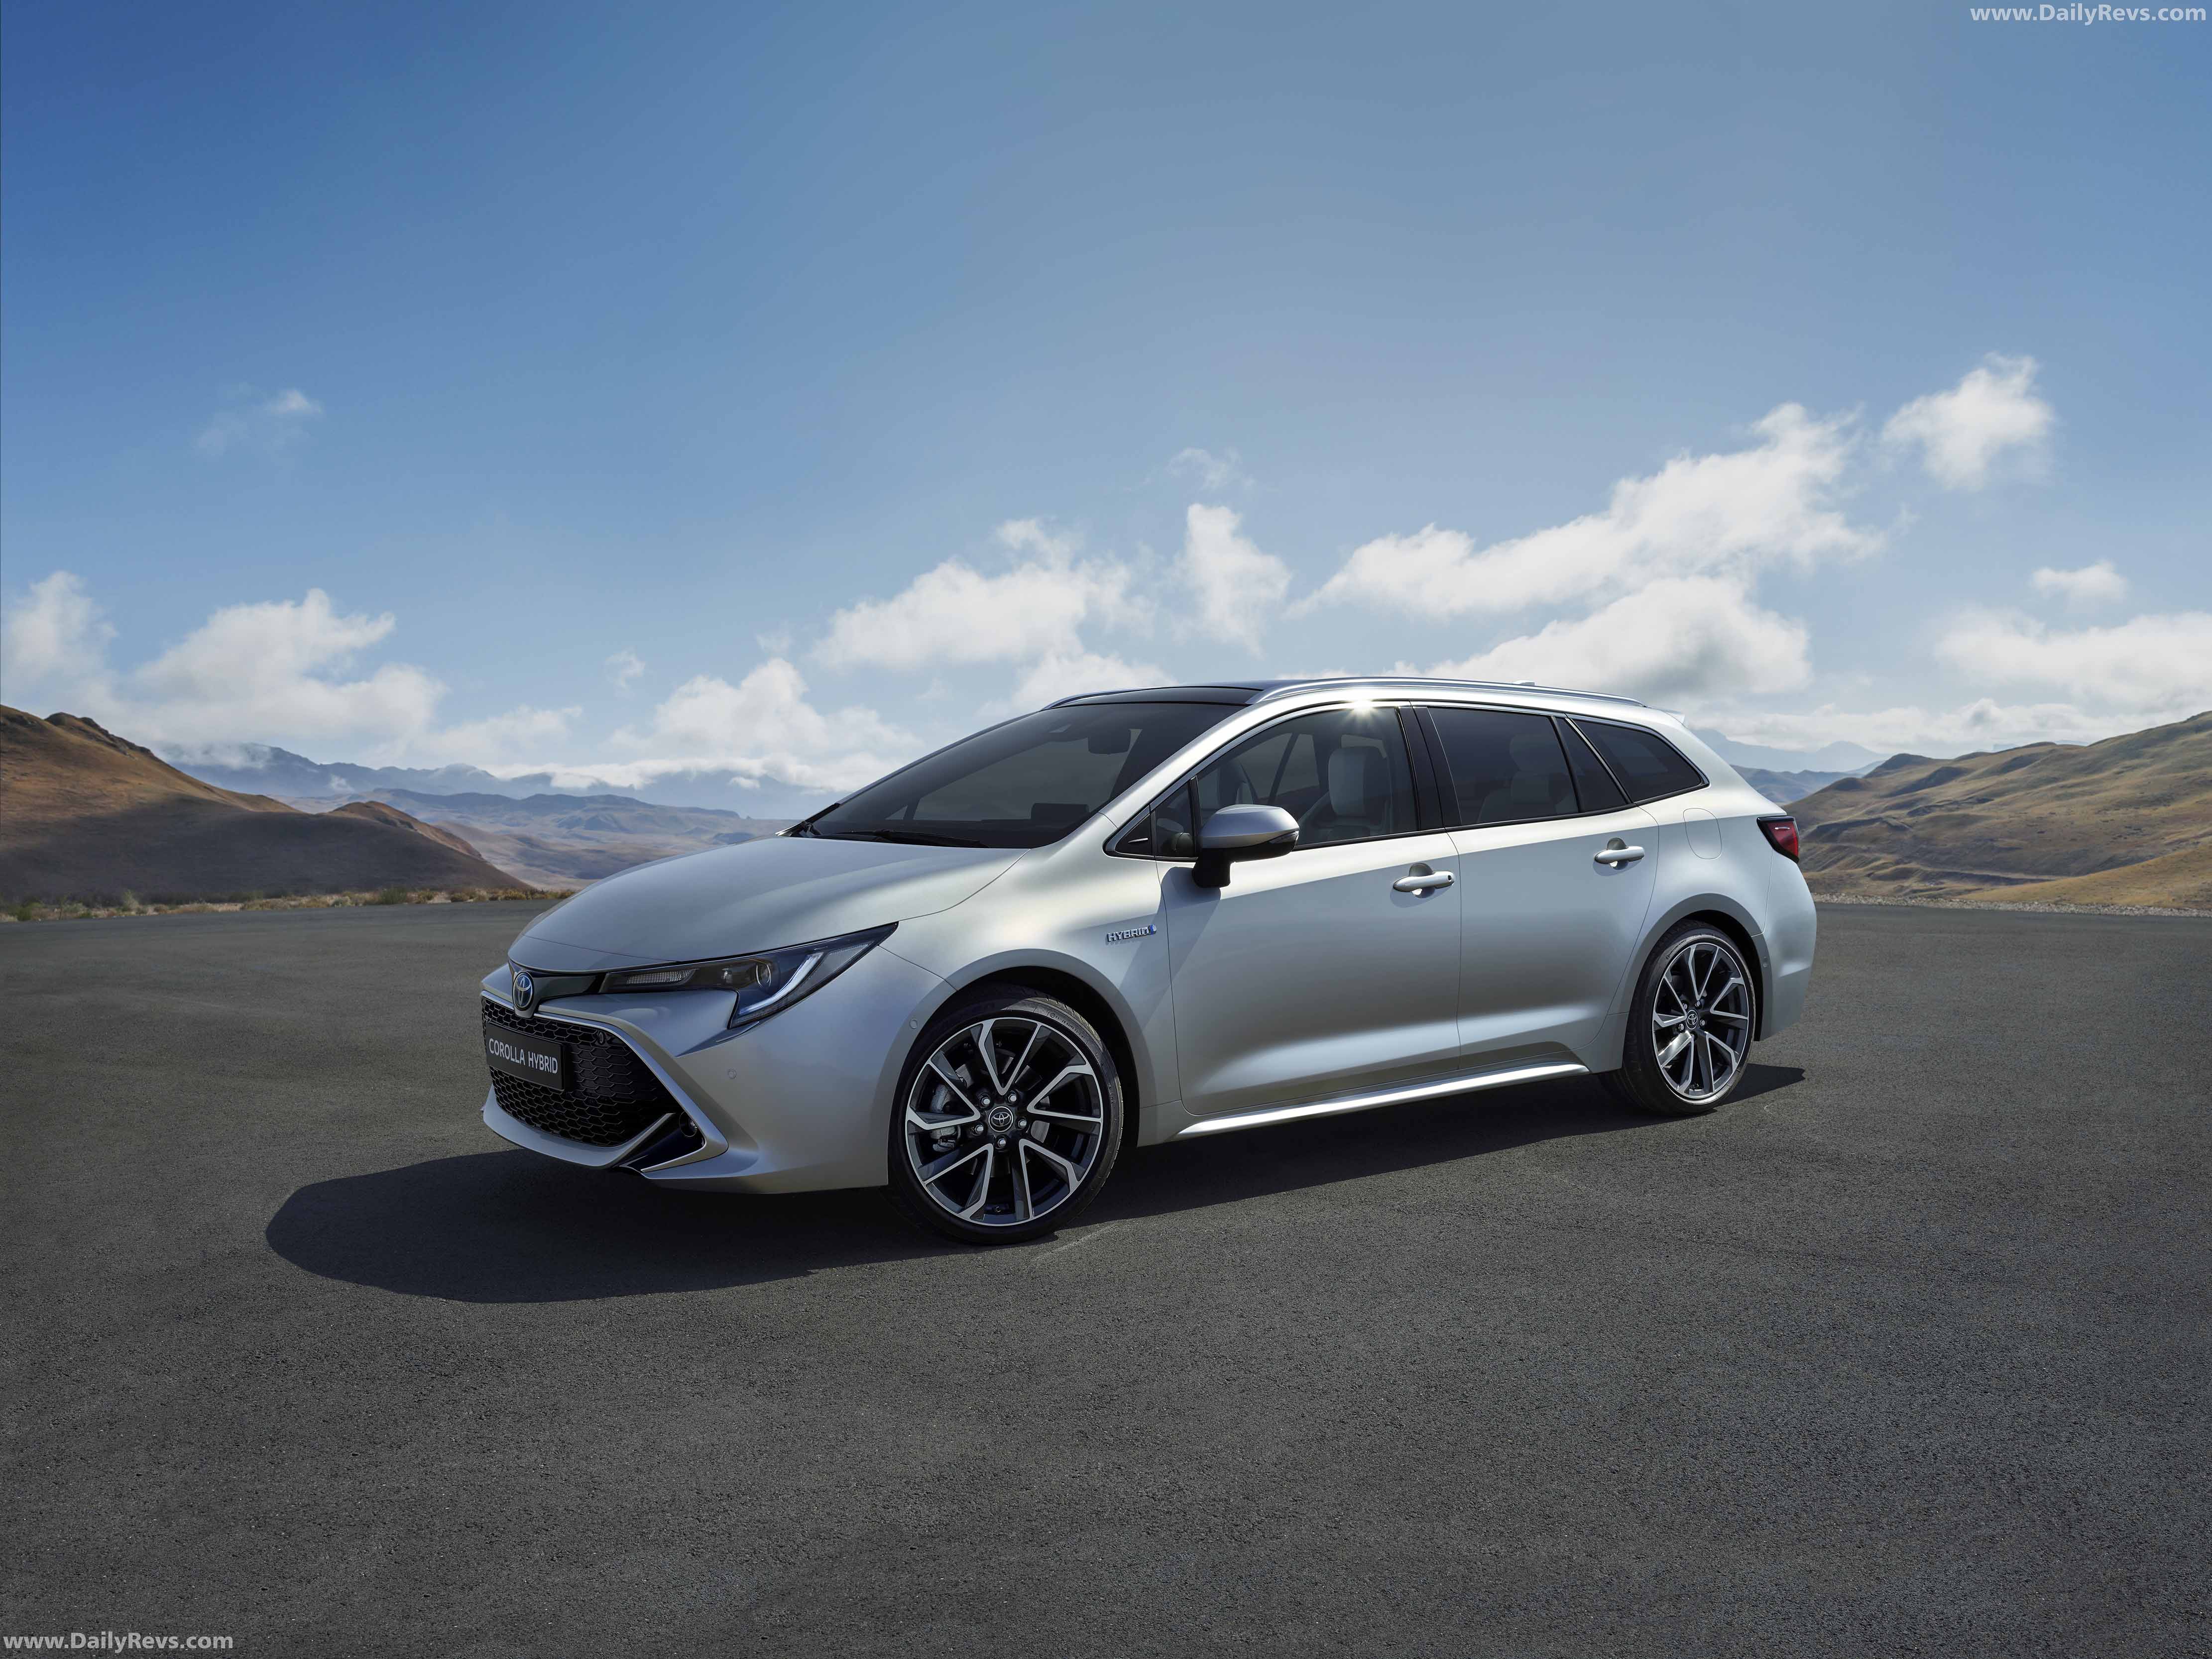 Toyota Corolla Touring Sports Hybrid exterior 2019